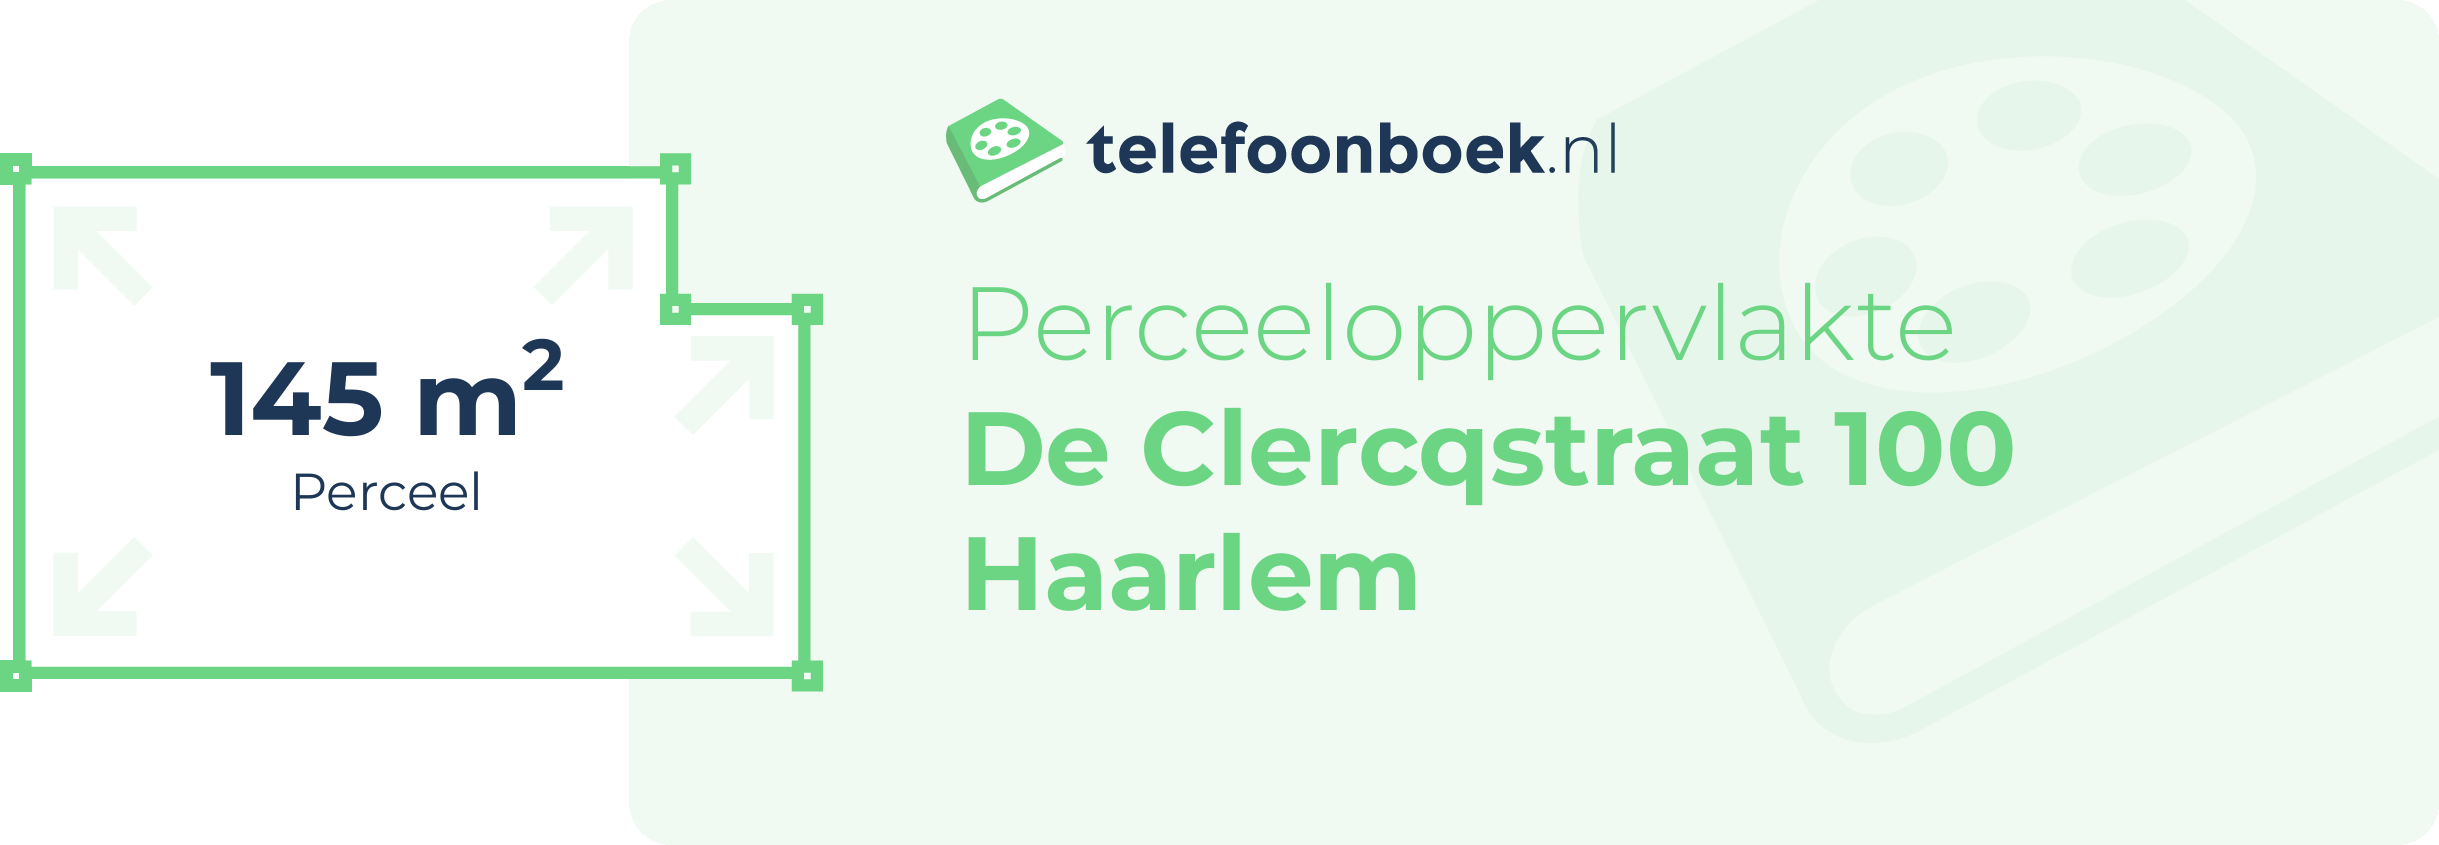 Perceeloppervlakte De Clercqstraat 100 Haarlem